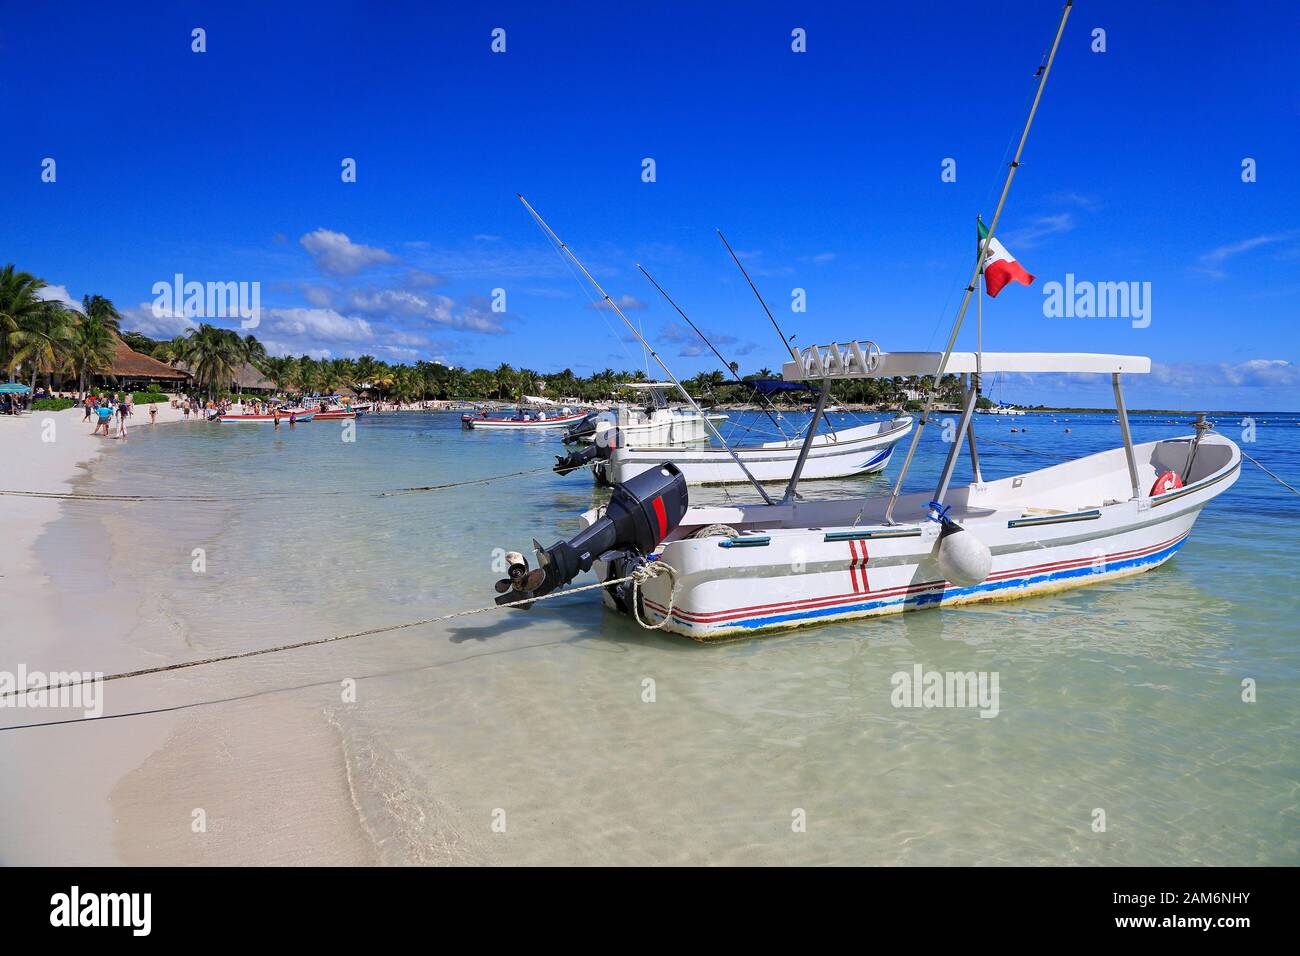 Plage de sable blanc des Caraïbes incluant des bateaux de pêche sur la Riviera Maya, côte du Yucatan, Quintana Roo, Mexique Banque D'Images